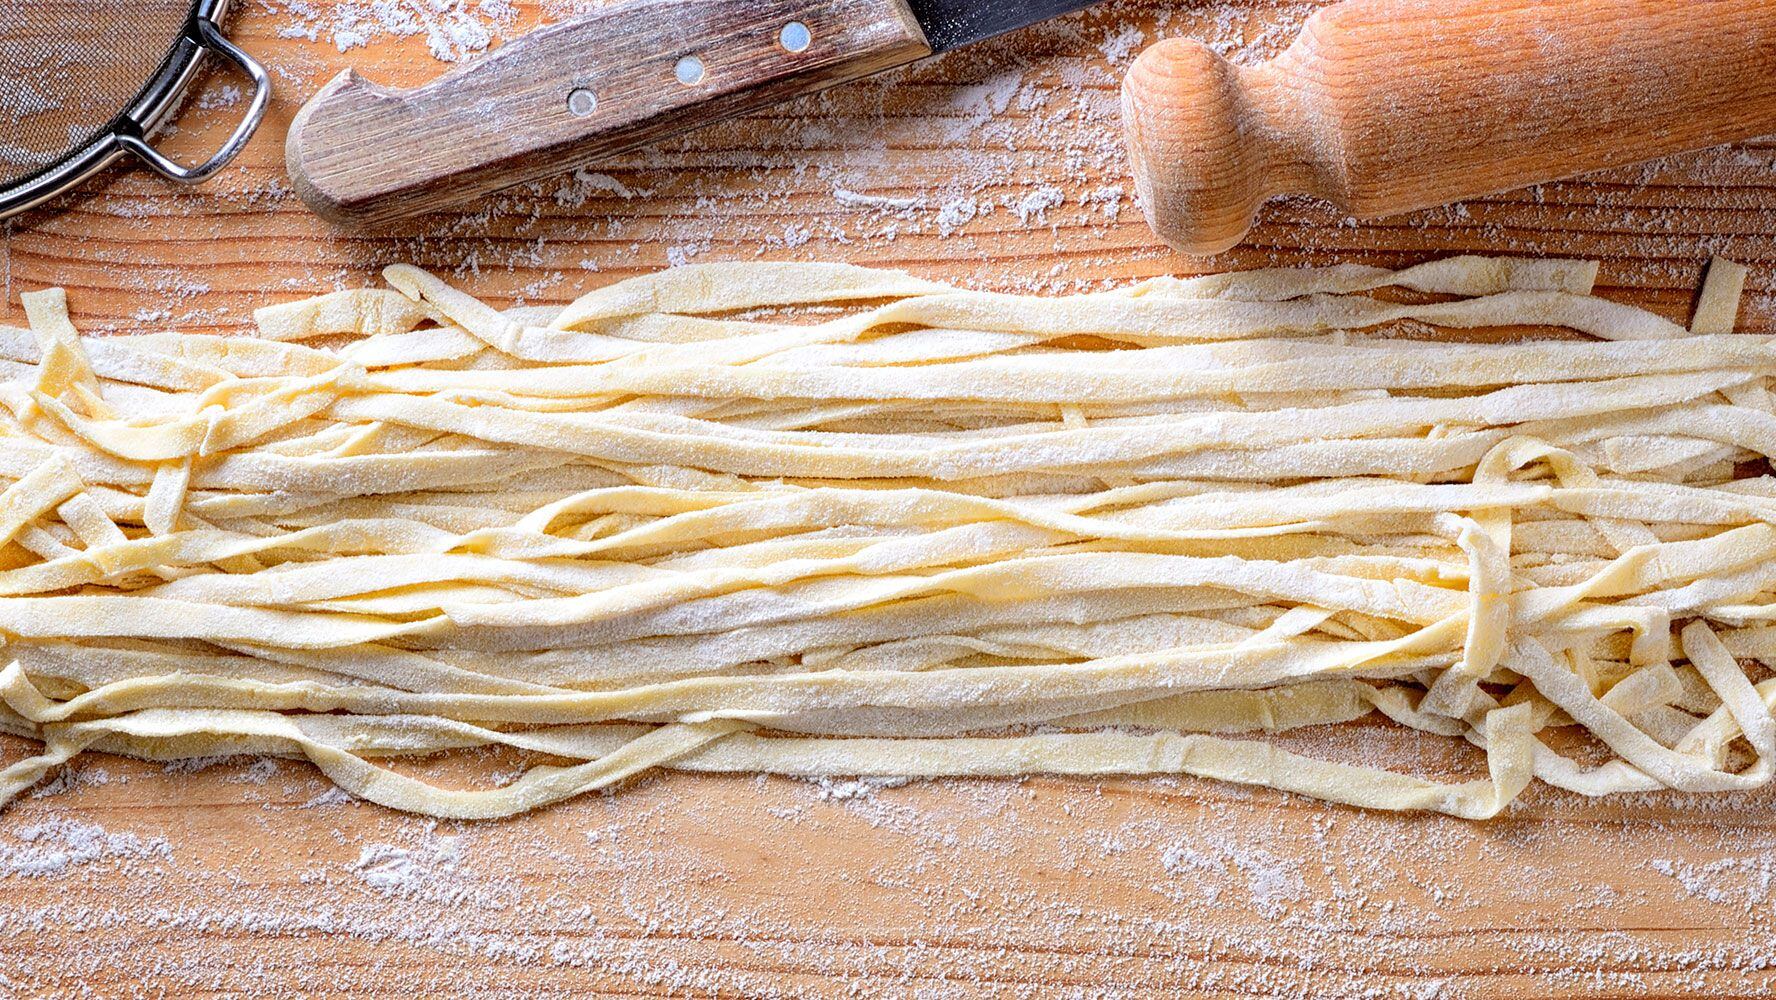 Los noodles (fideos) pueden tomar diversas formas.